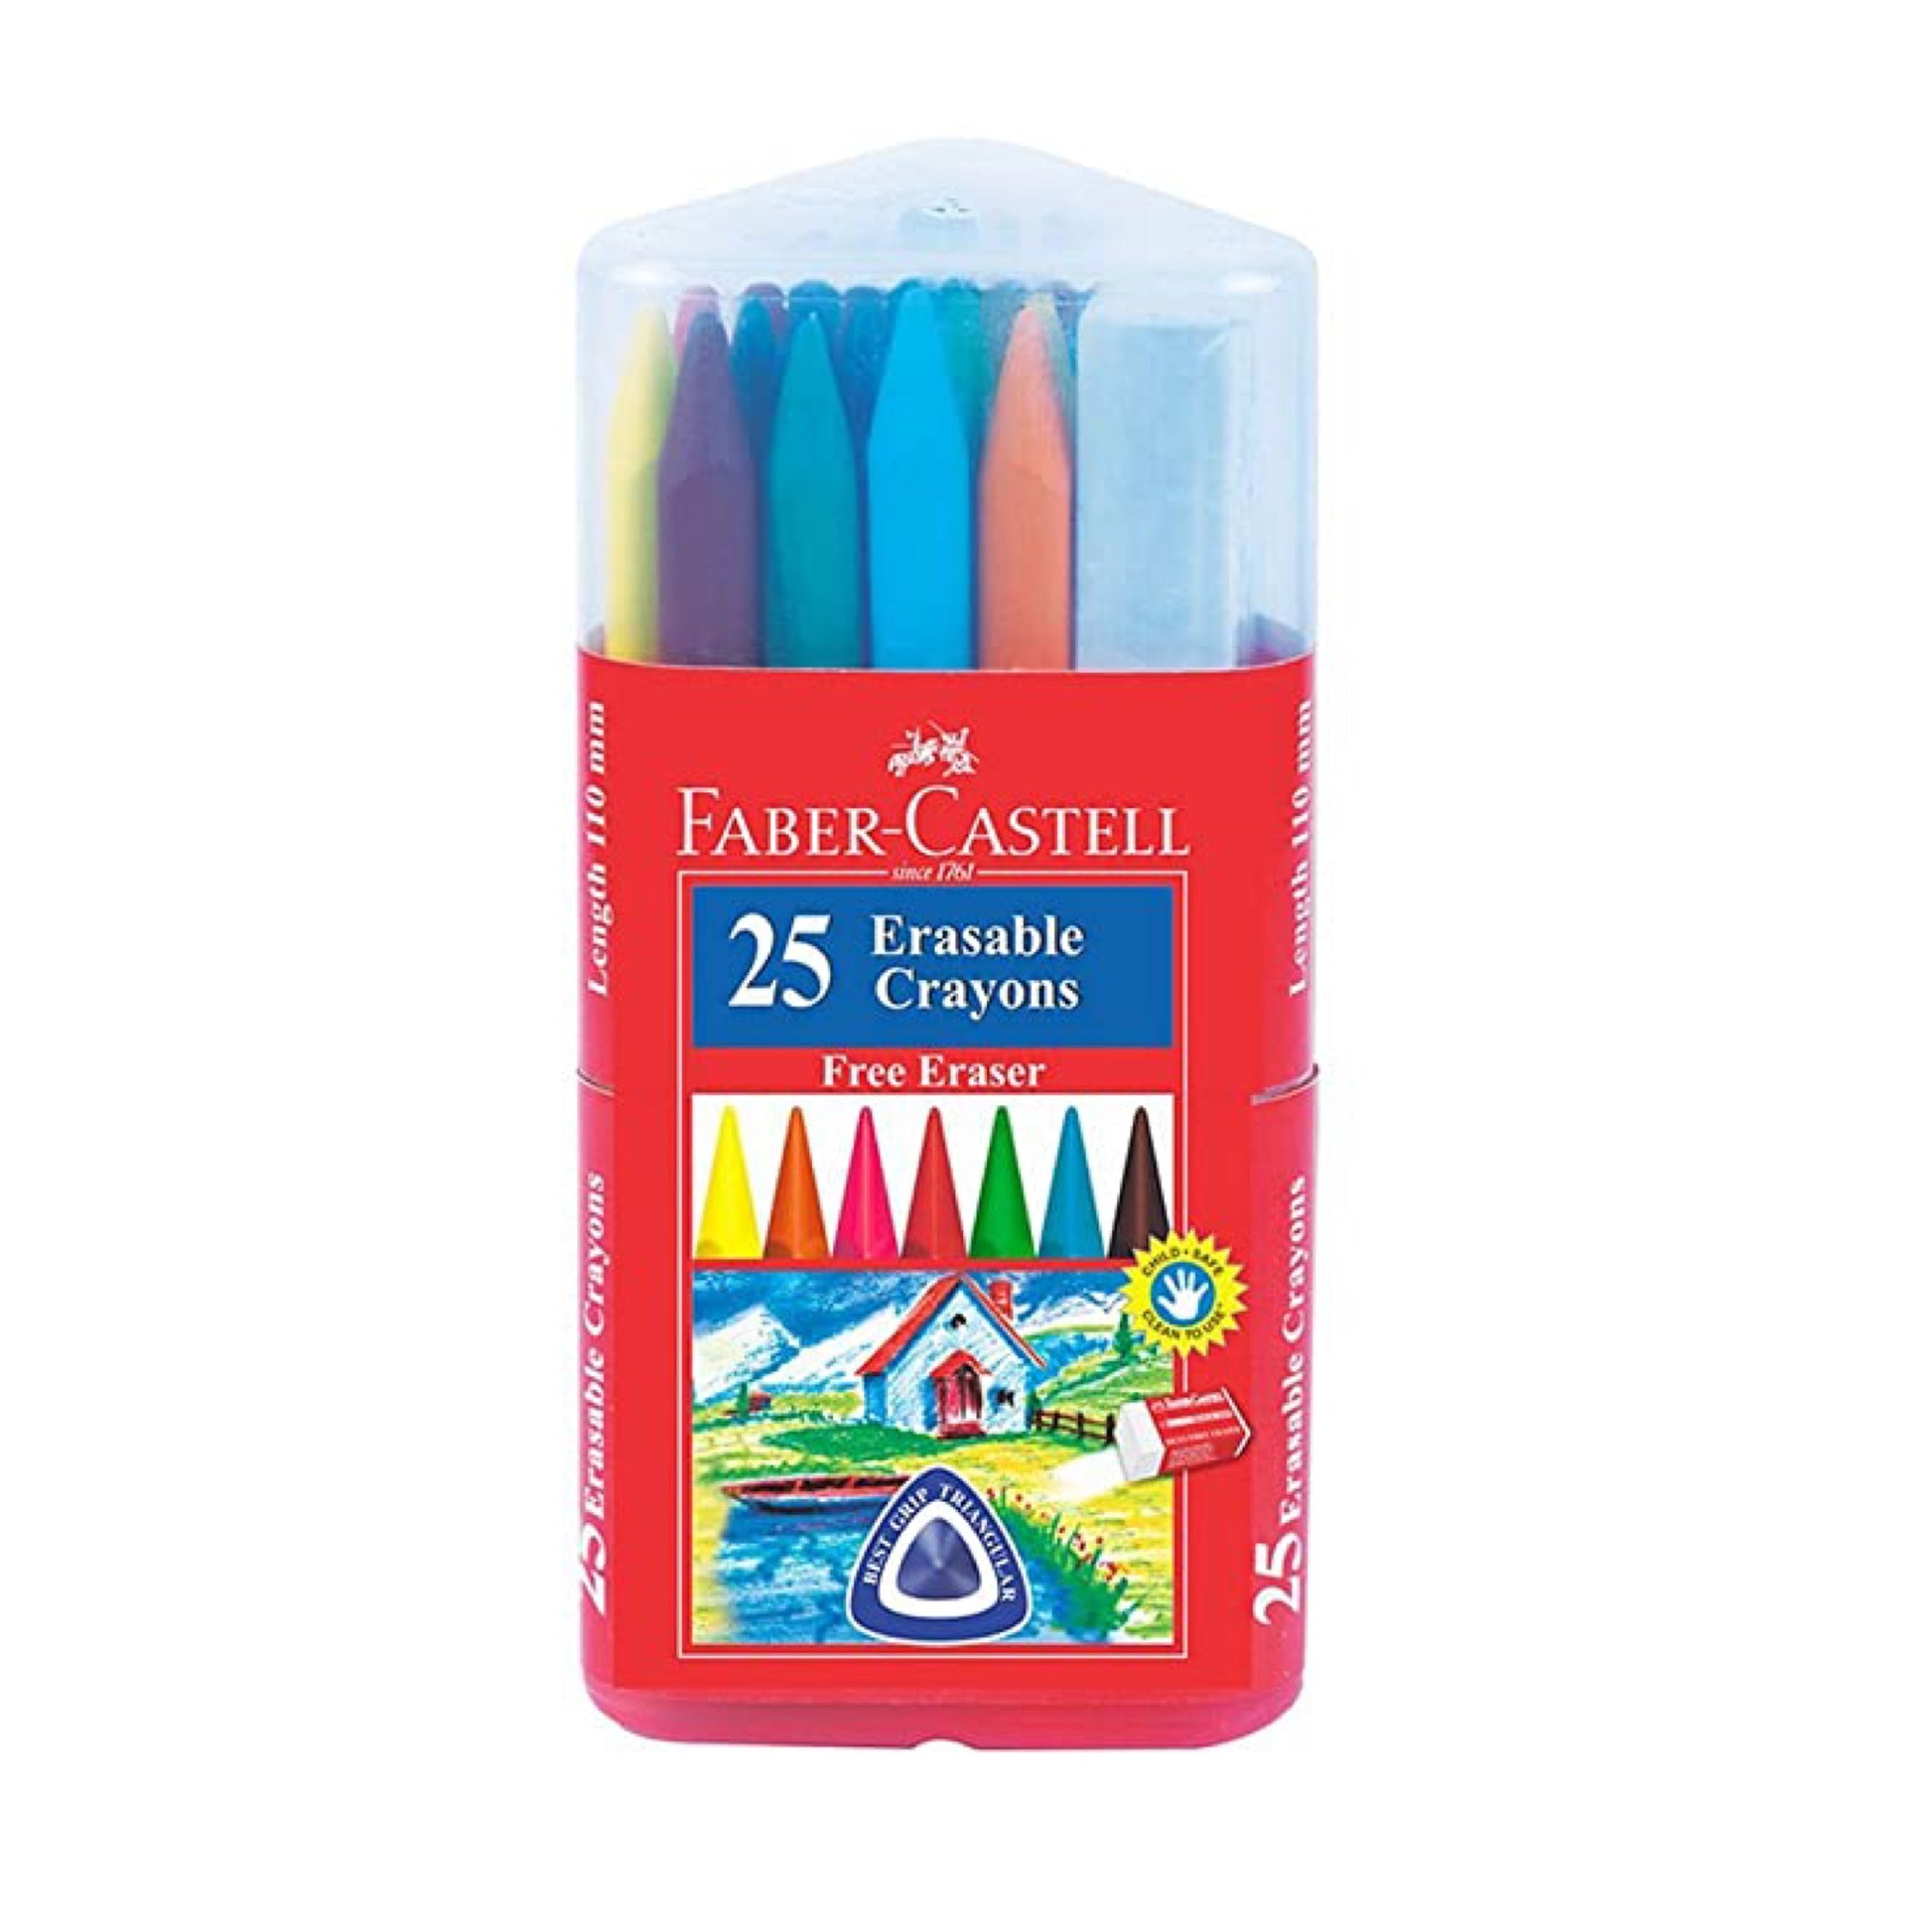 Faber Castell 25 Crayons II فيبر كاستل أقلام تلوين شمعي عدد 25